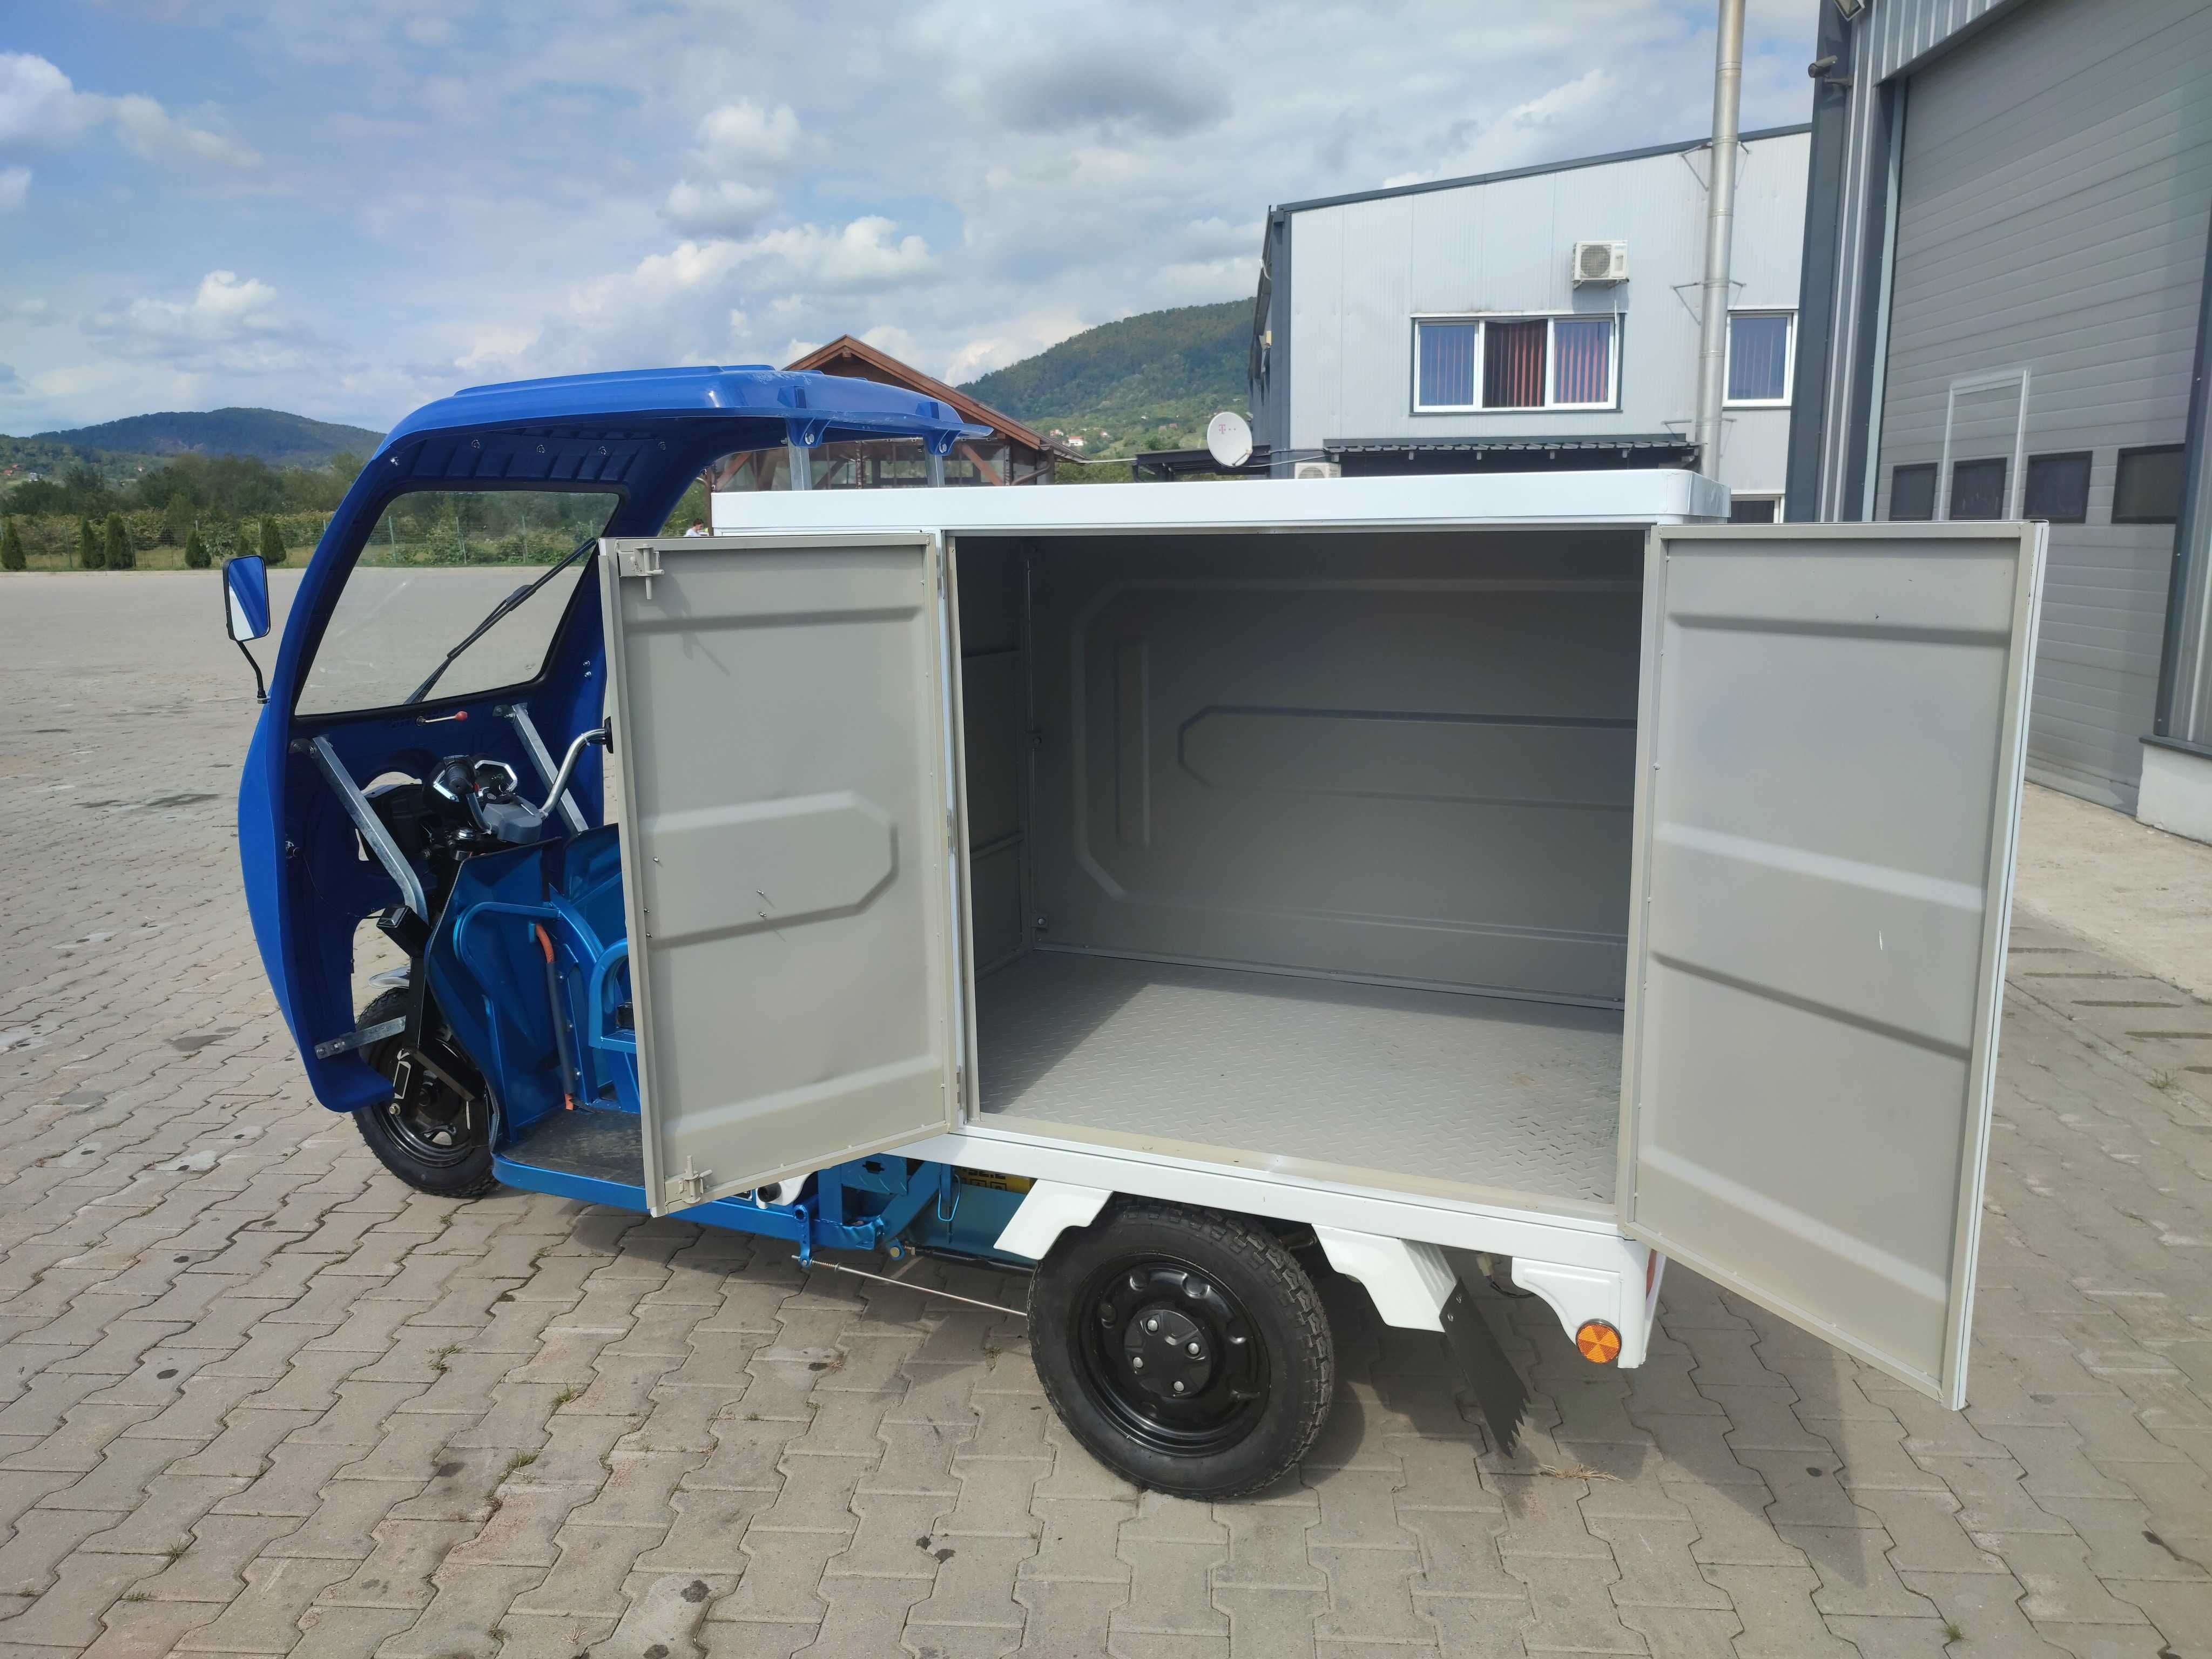 Tricicleta electrica Thor Baisan Cargo 1800 de W Agramix